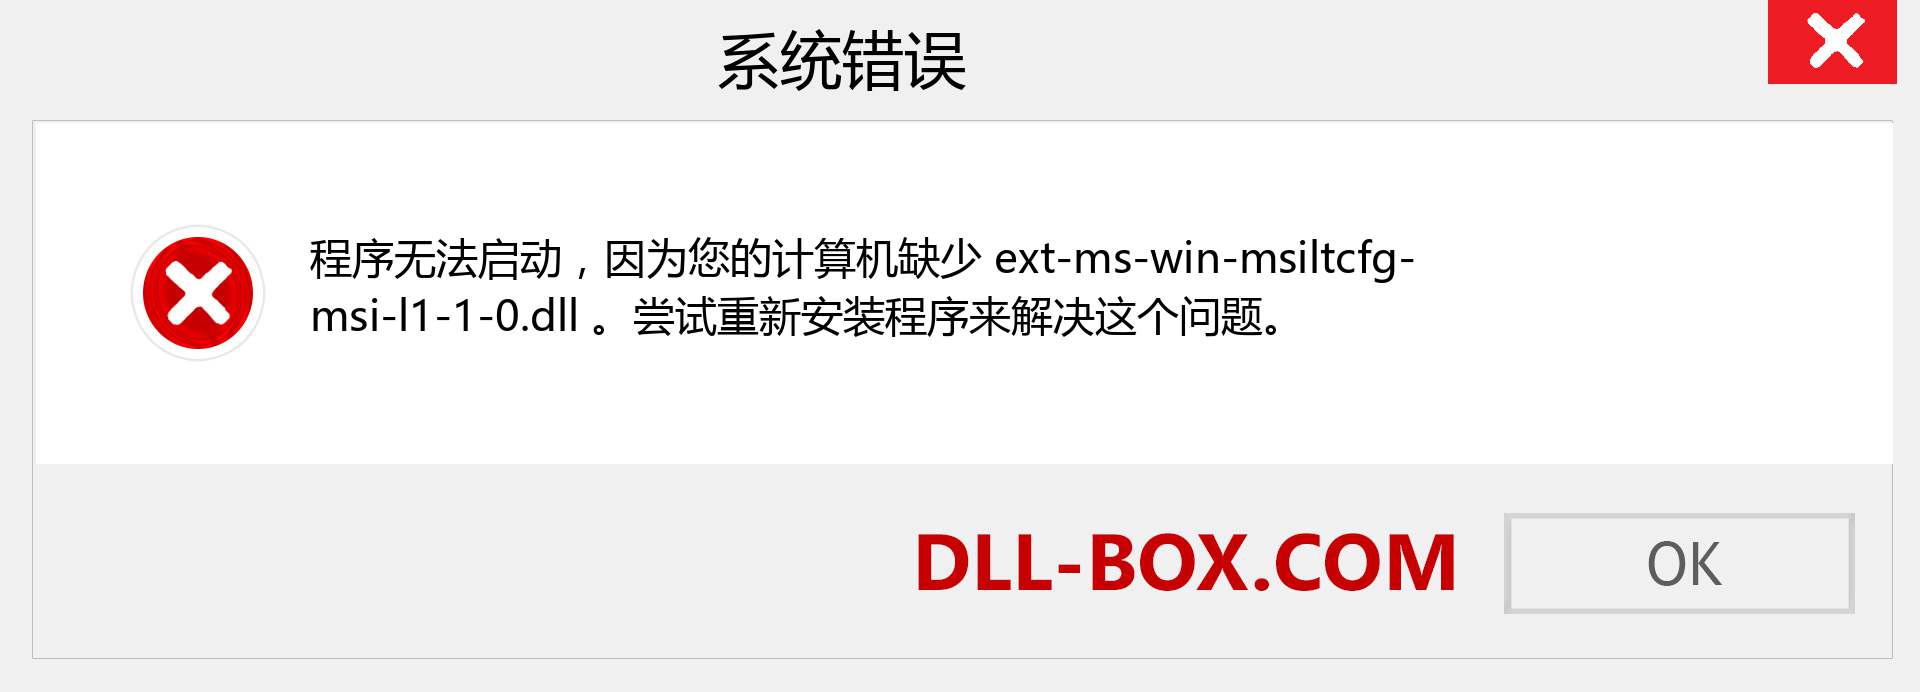 ext-ms-win-msiltcfg-msi-l1-1-0.dll 文件丢失？。 适用于 Windows 7、8、10 的下载 - 修复 Windows、照片、图像上的 ext-ms-win-msiltcfg-msi-l1-1-0 dll 丢失错误